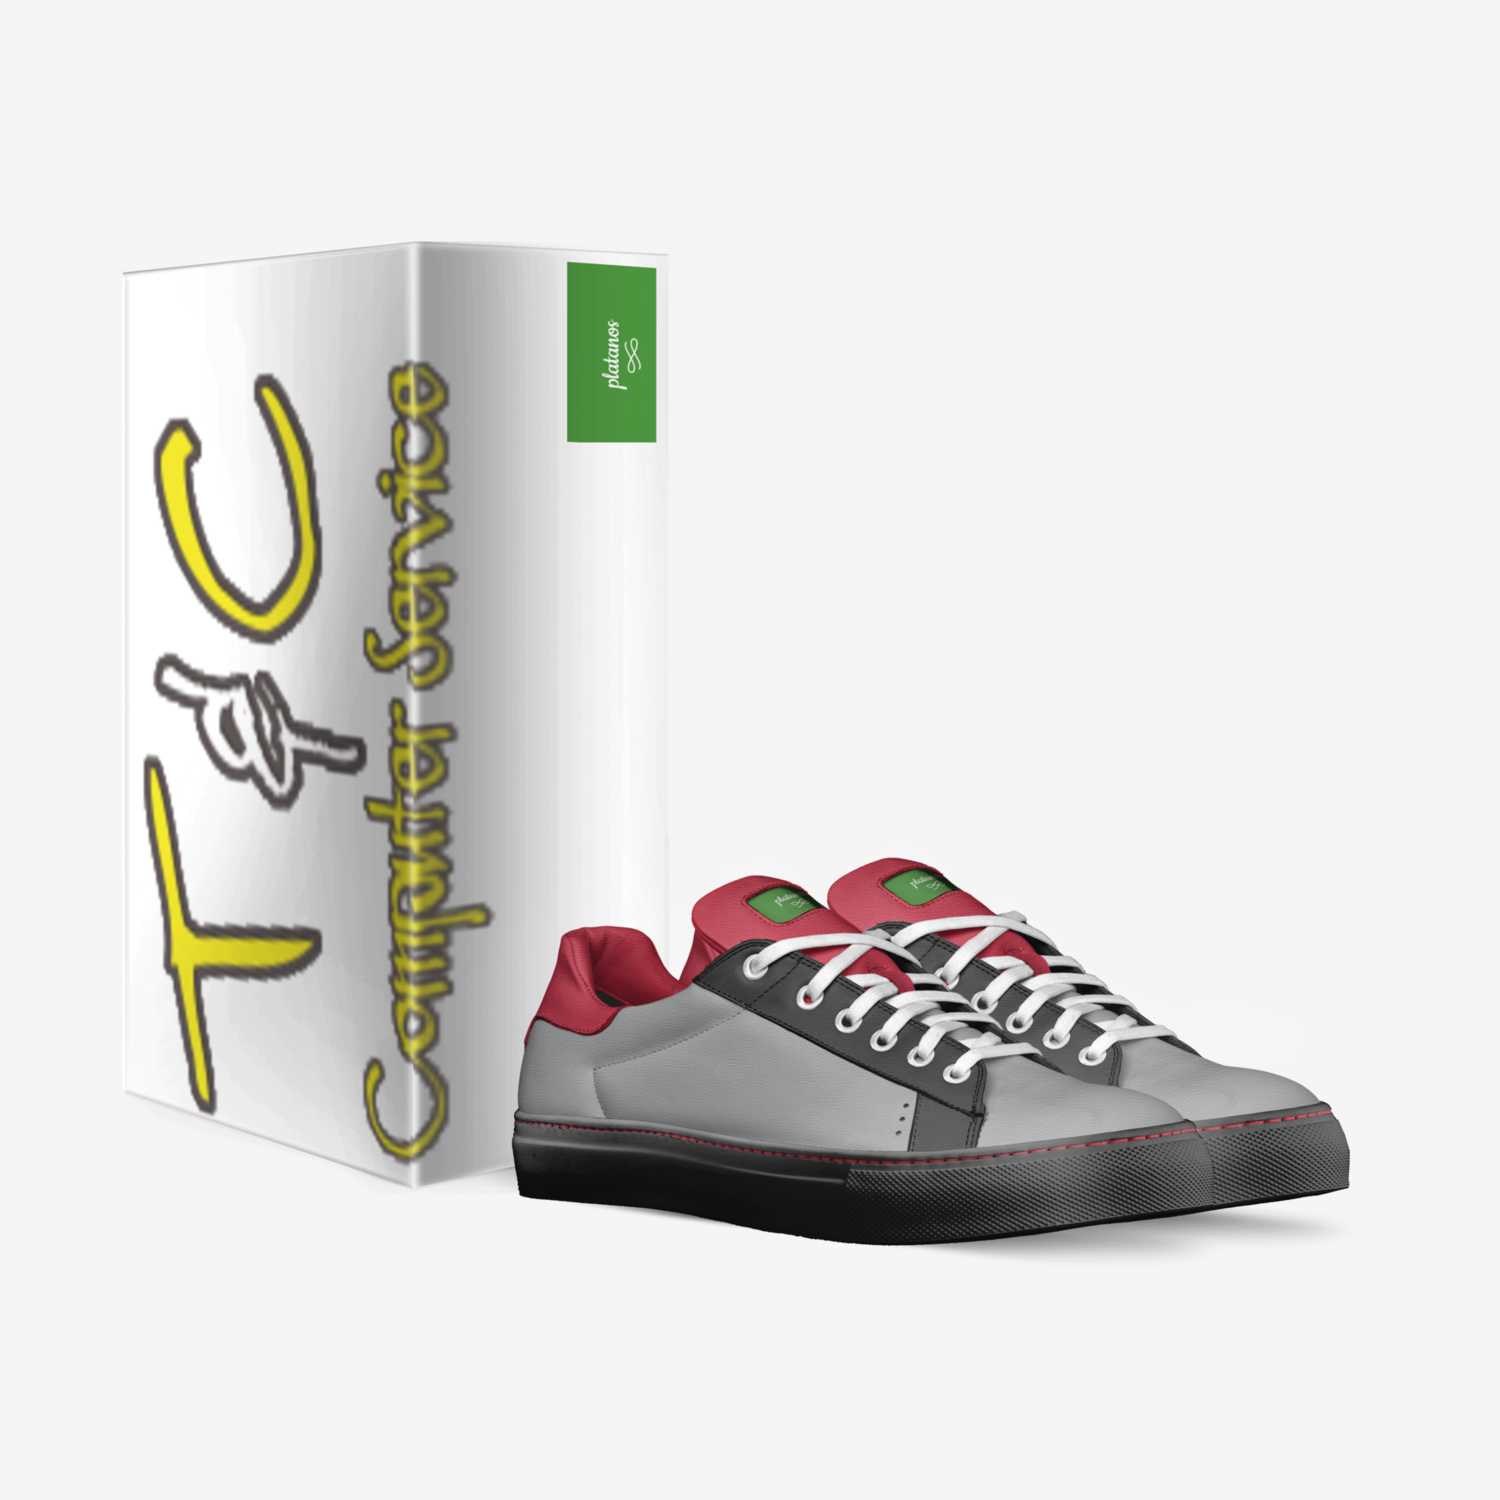 platanos custom made in Italy shoes by Tony Pita | Box view